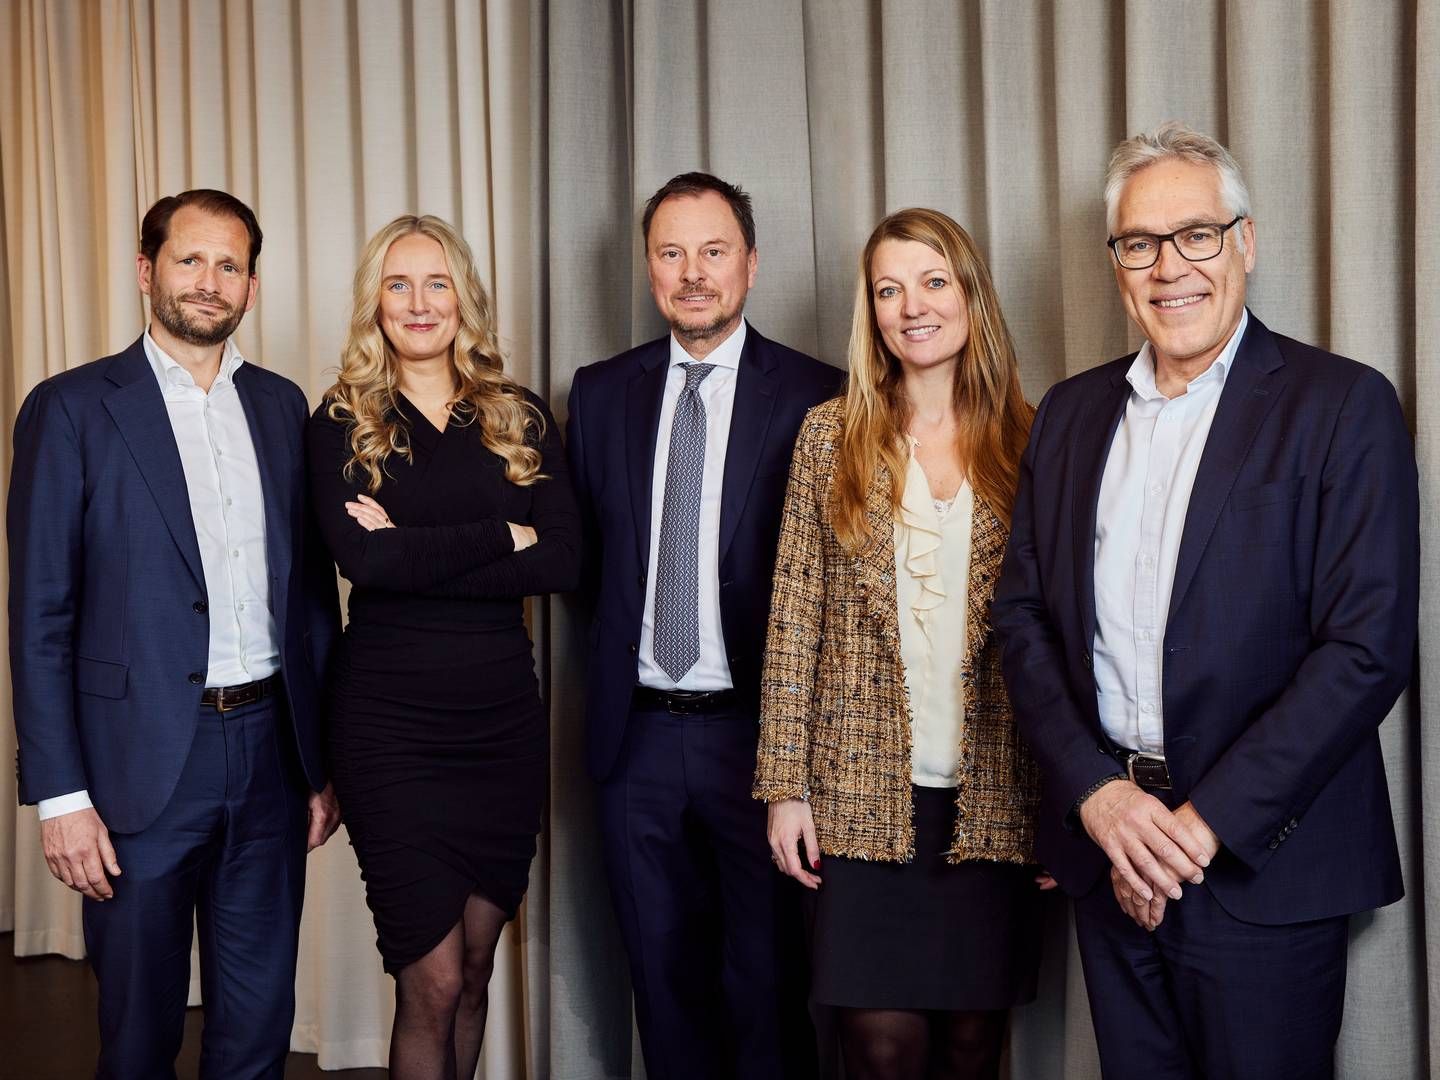 Lundgrens' transaktions- og asset management-team vil fremadrettet være anført af følgende partnere fra venstre: Tobias Vieth, Ninna Thalund Daugaard, Thomas Ulrik, Ann Frølund Winther og Niels Gram-Hanssen. | Foto: Lundgrens / PR